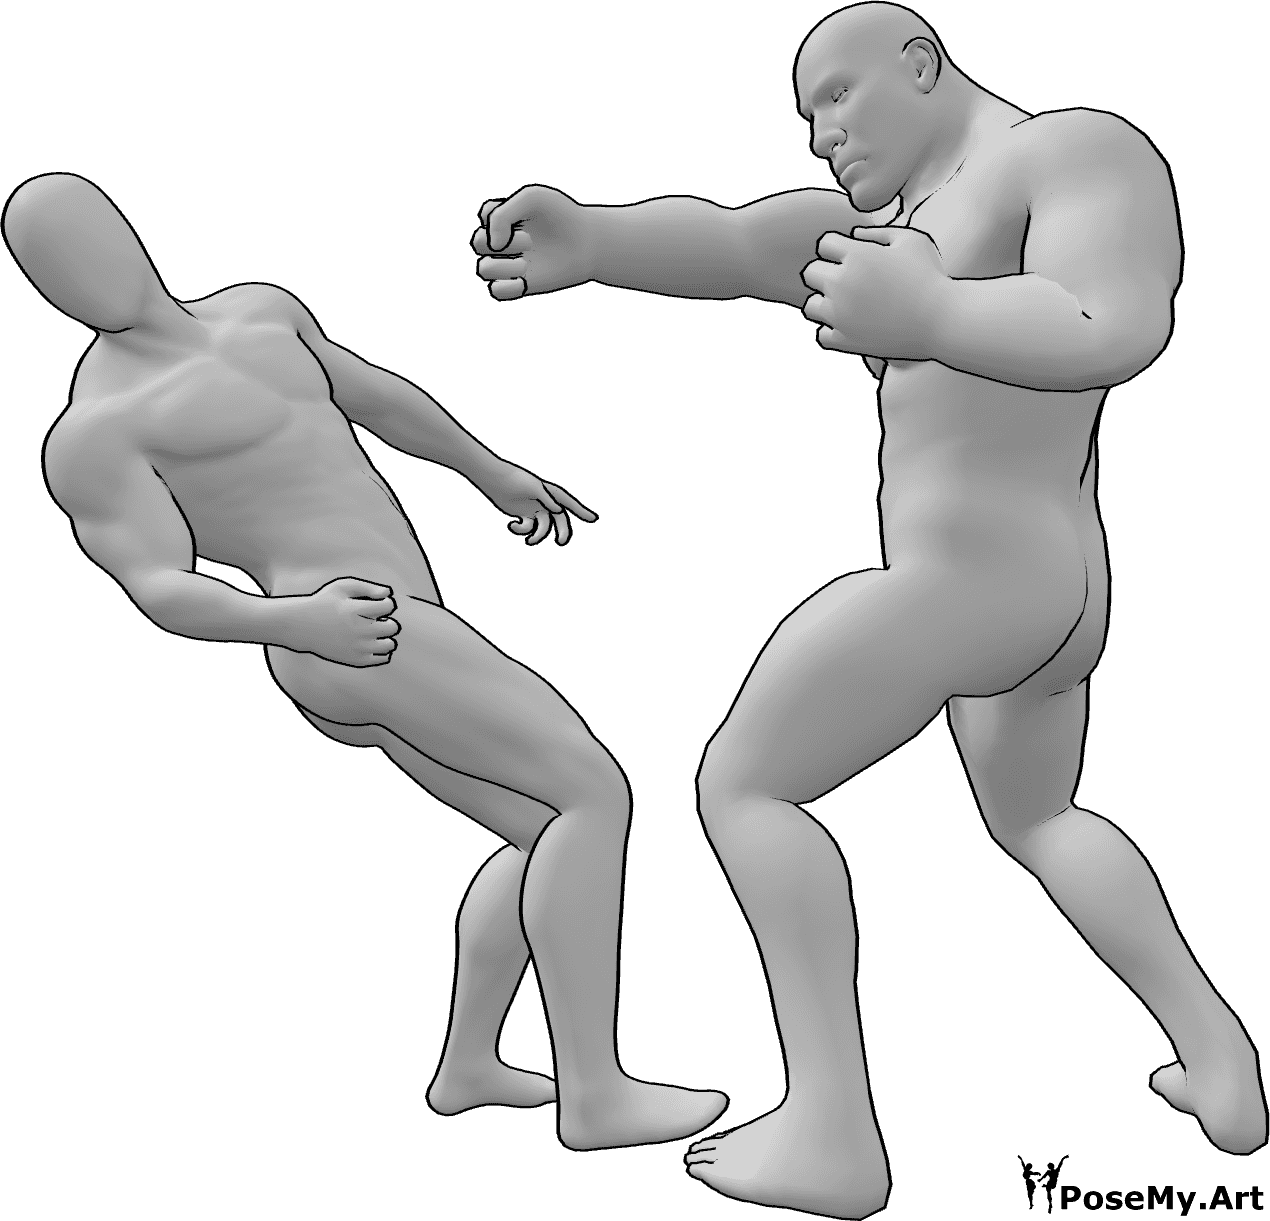 Posen-Referenz- Brute männliche Kampfpose - Das brutale Männchen schlägt das andere Männchen nieder und es fällt rückwärts in Pose